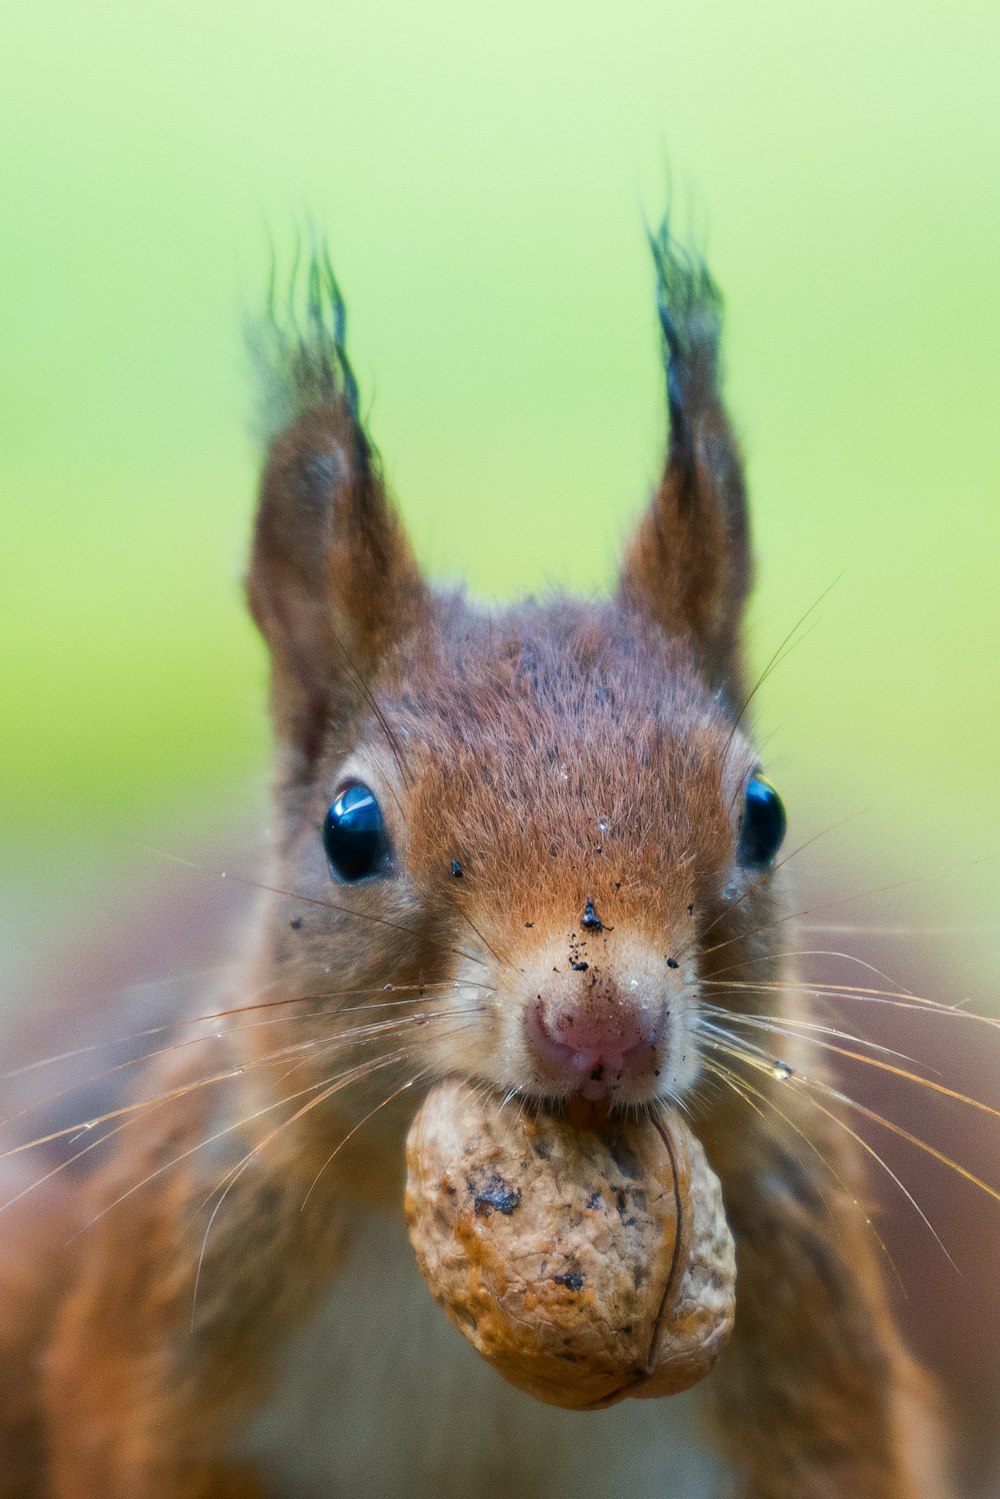 Mise au point de la photo de l’écureuil battant une noix brune